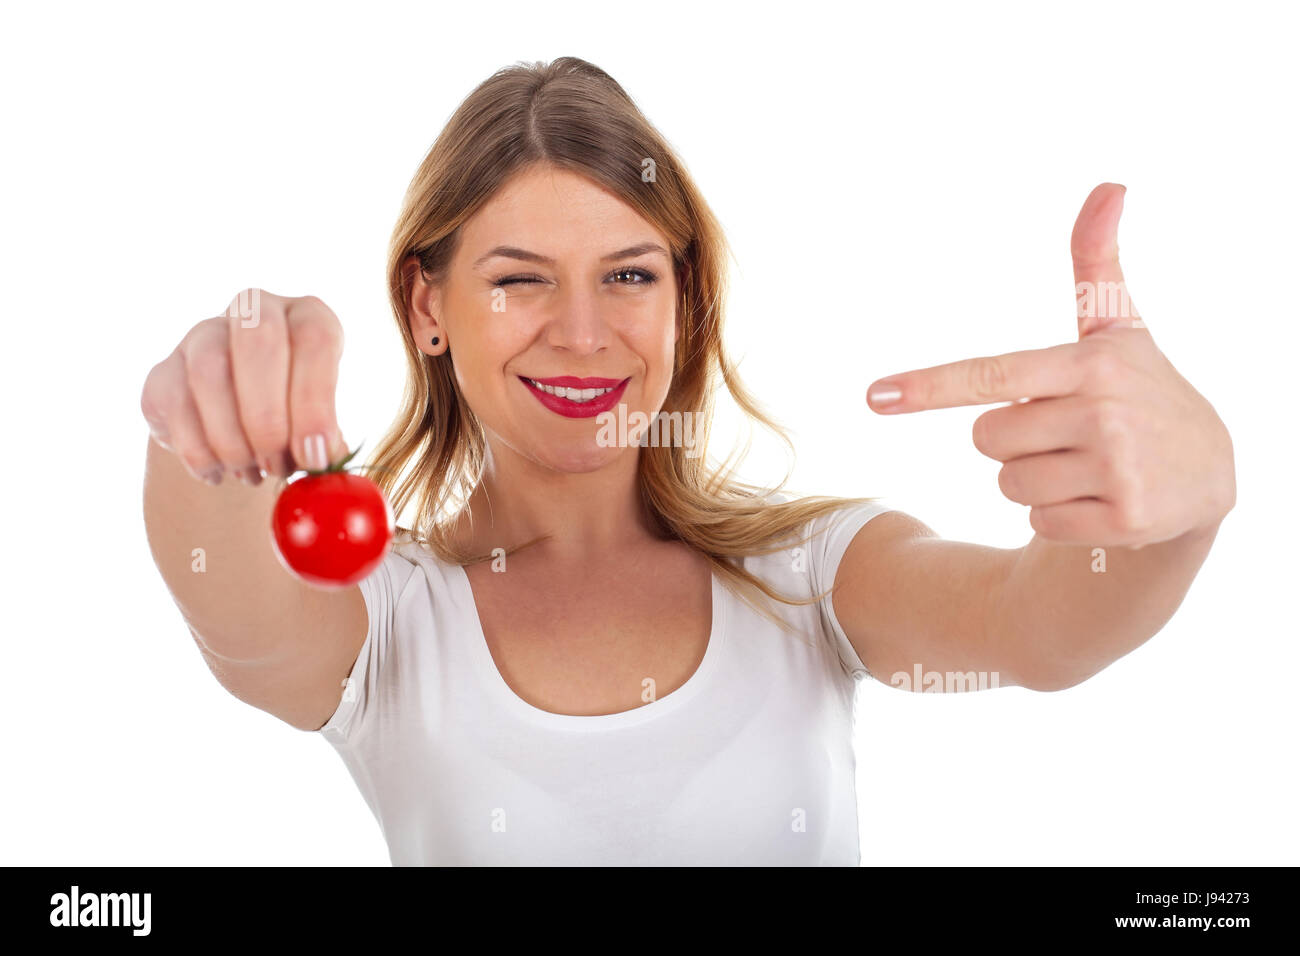 Bild von eine lustige junge Frau mit einer Kirsche Tomate Stockfoto